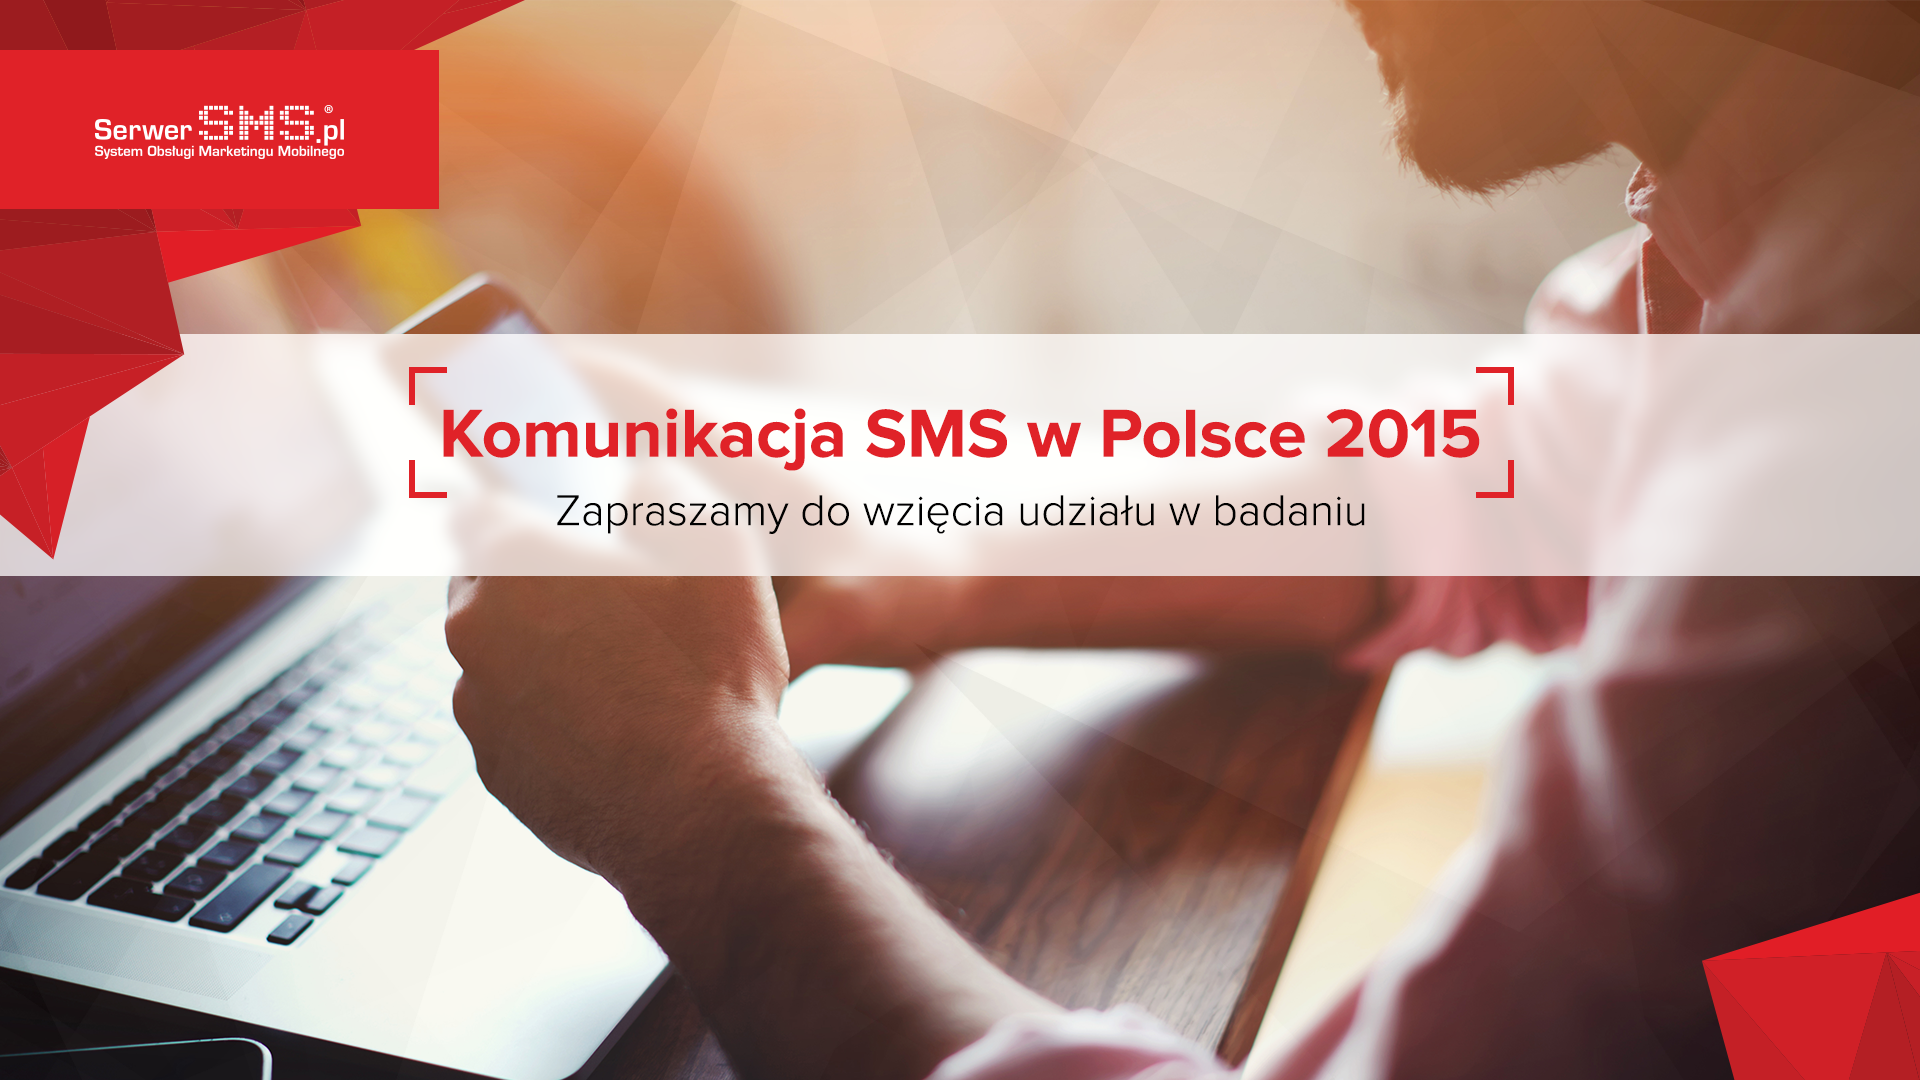 Ruszyła czwarta edycja badania Komunikacja SMS w Polsce